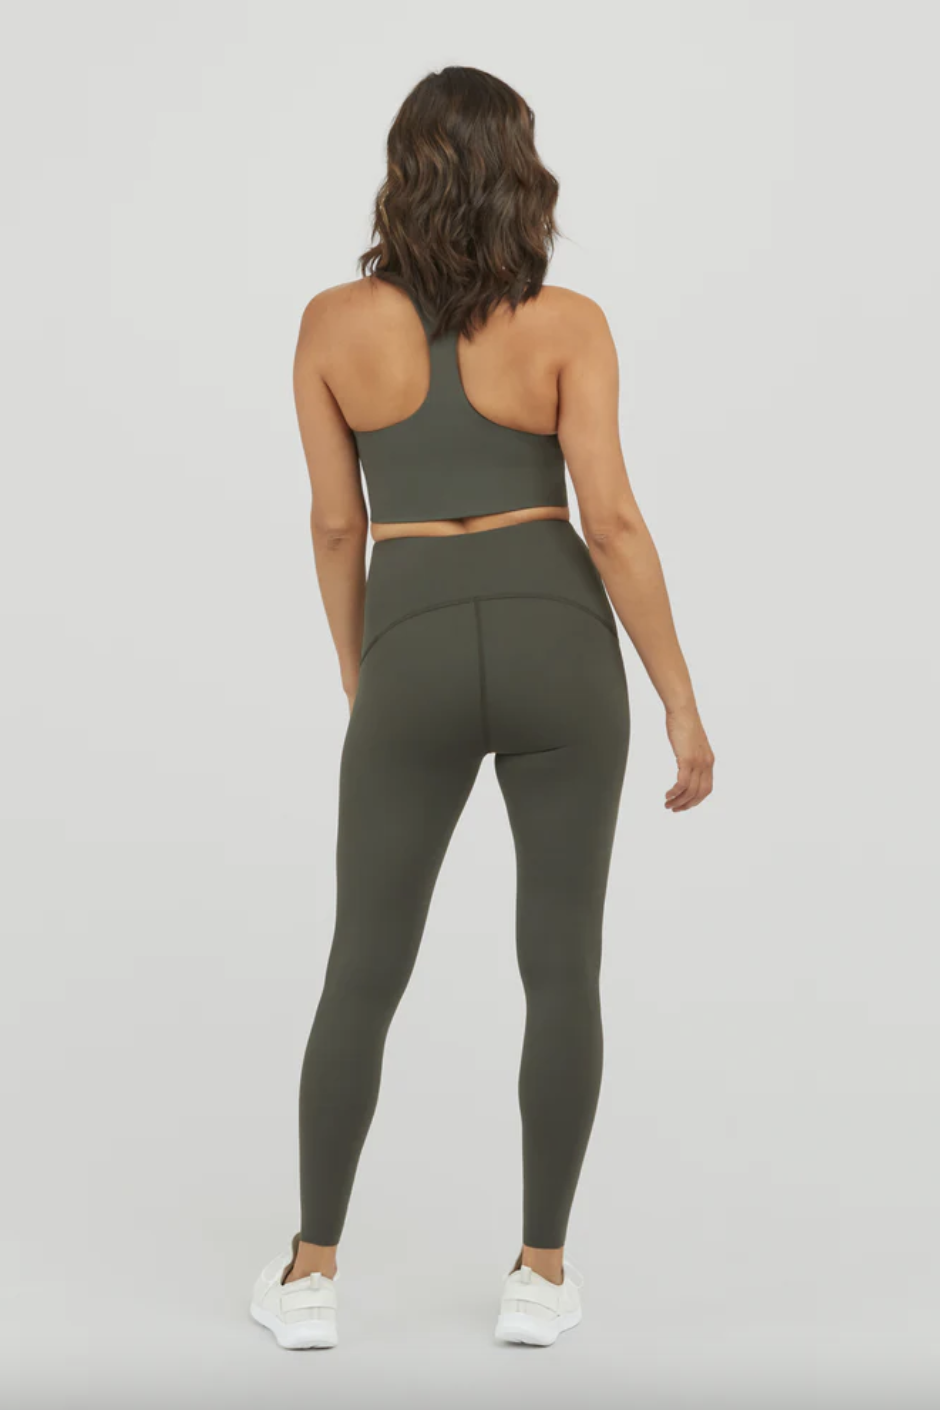 Seamless Running Sports Yoga Pants Quick Dry High Waist Butt